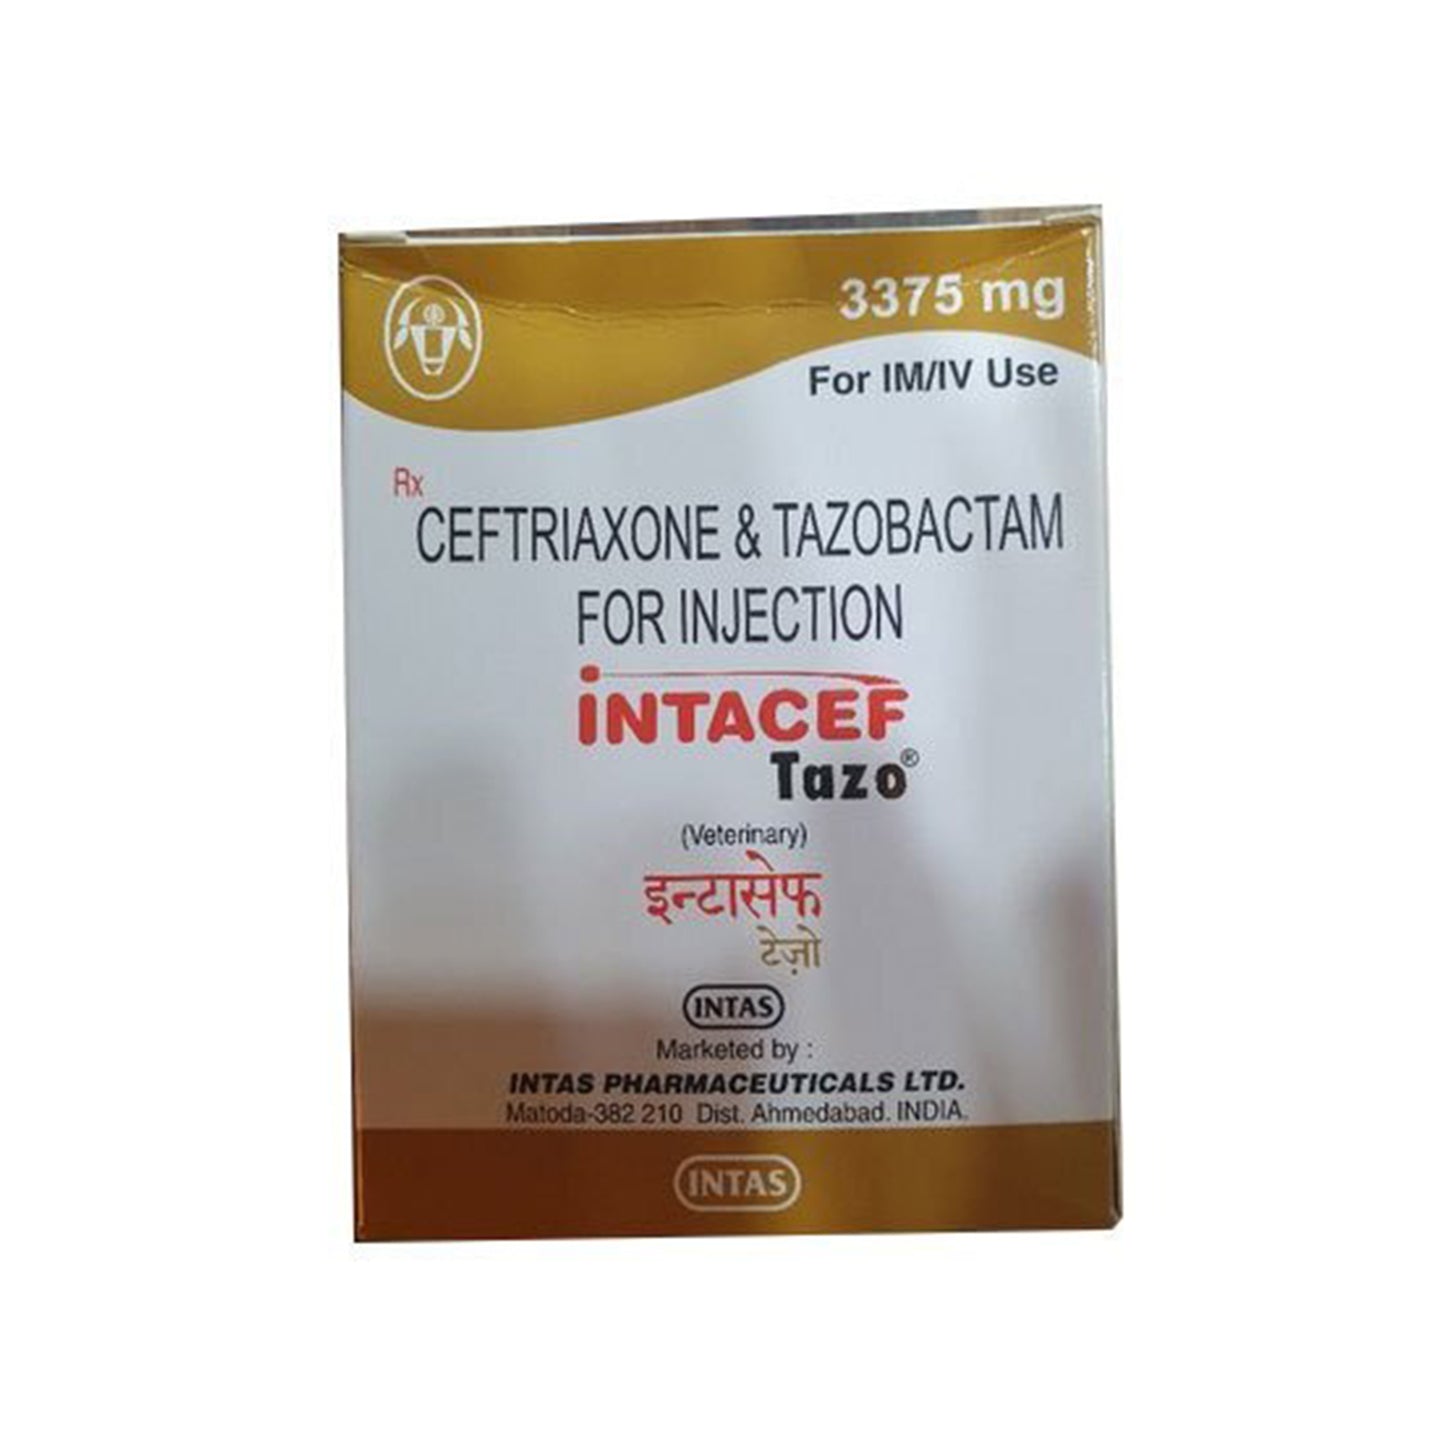 Intas - Intacef Tazo Injection